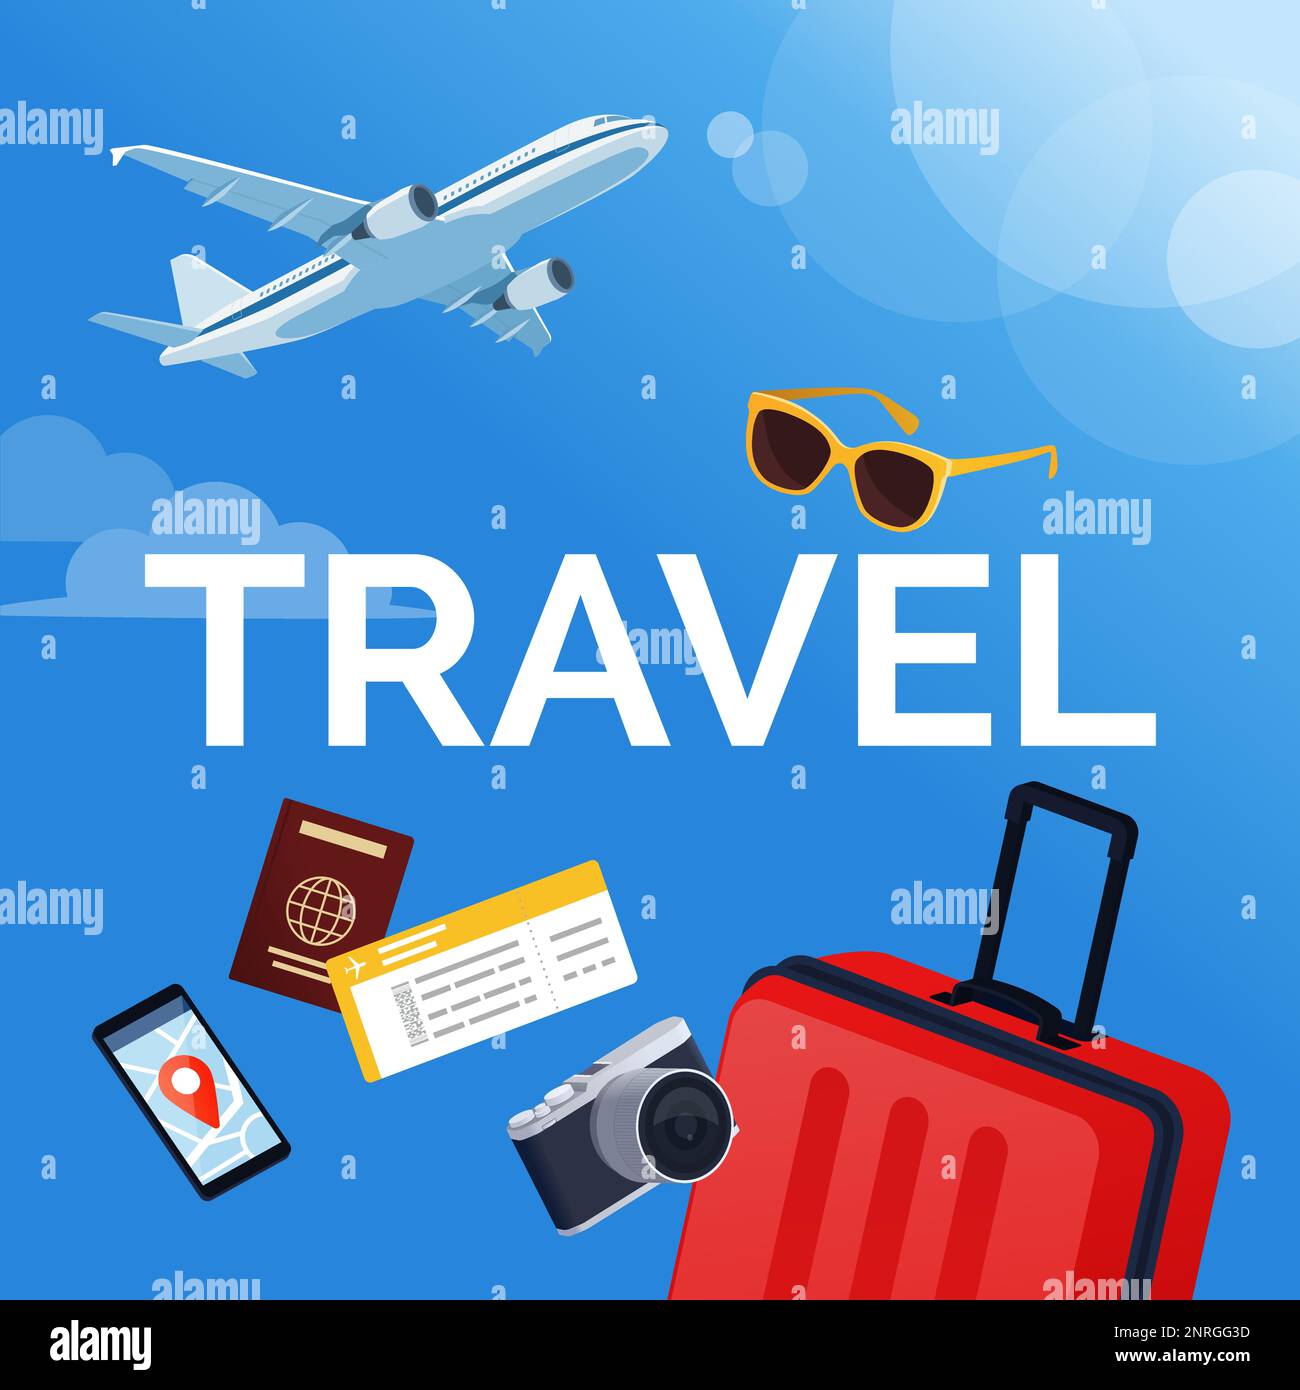 Texte de voyage avec des accessoires de voyage, et vol d'avion en arrière-plan: Voyage international et concept de tourisme Illustration de Vecteur